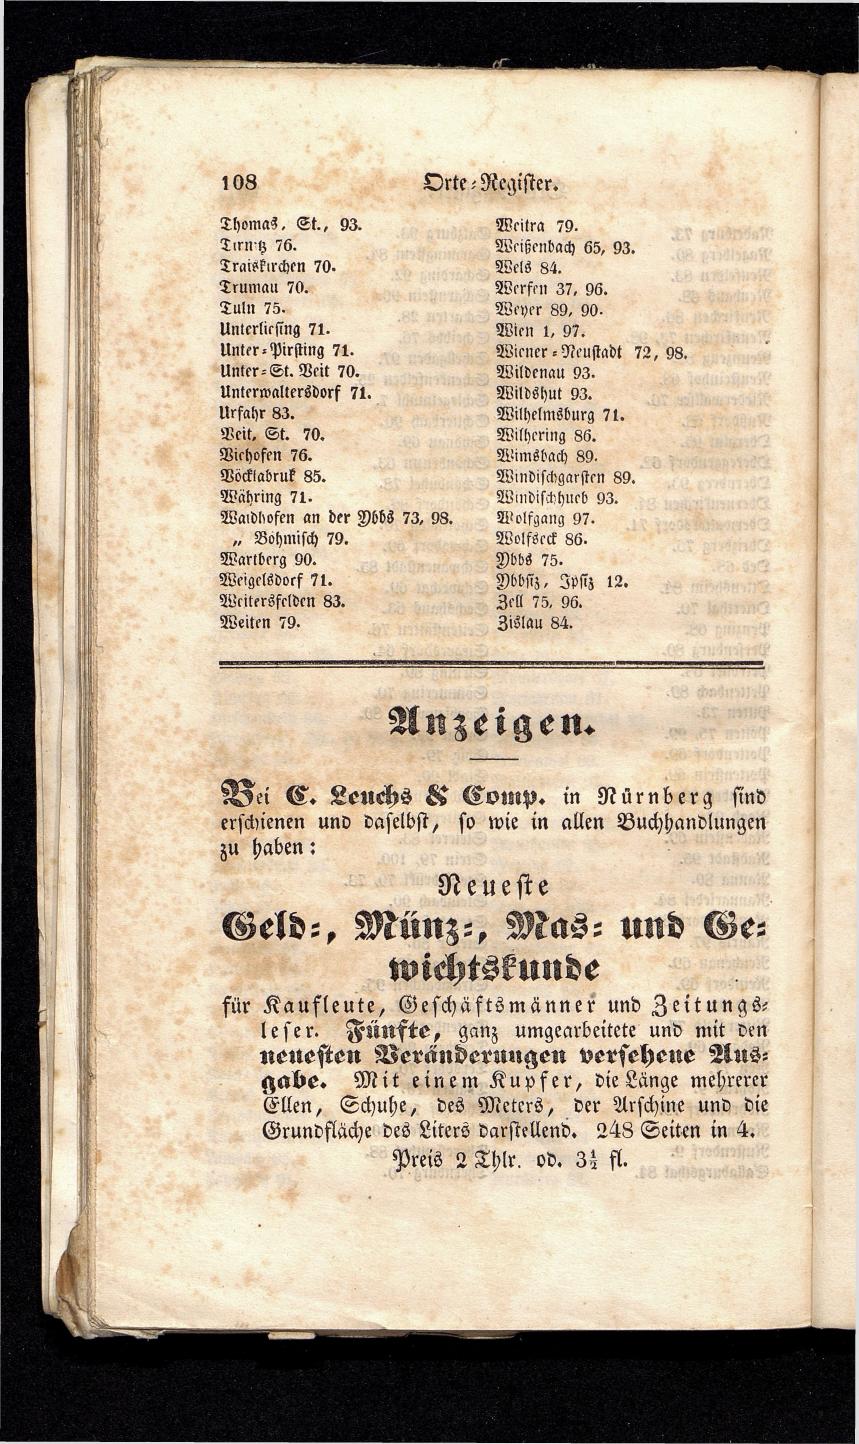 Grosses Adressbuch der Kaufleute. No. 13. Oesterreich ober u. unter der Enns 1844 - Seite 112